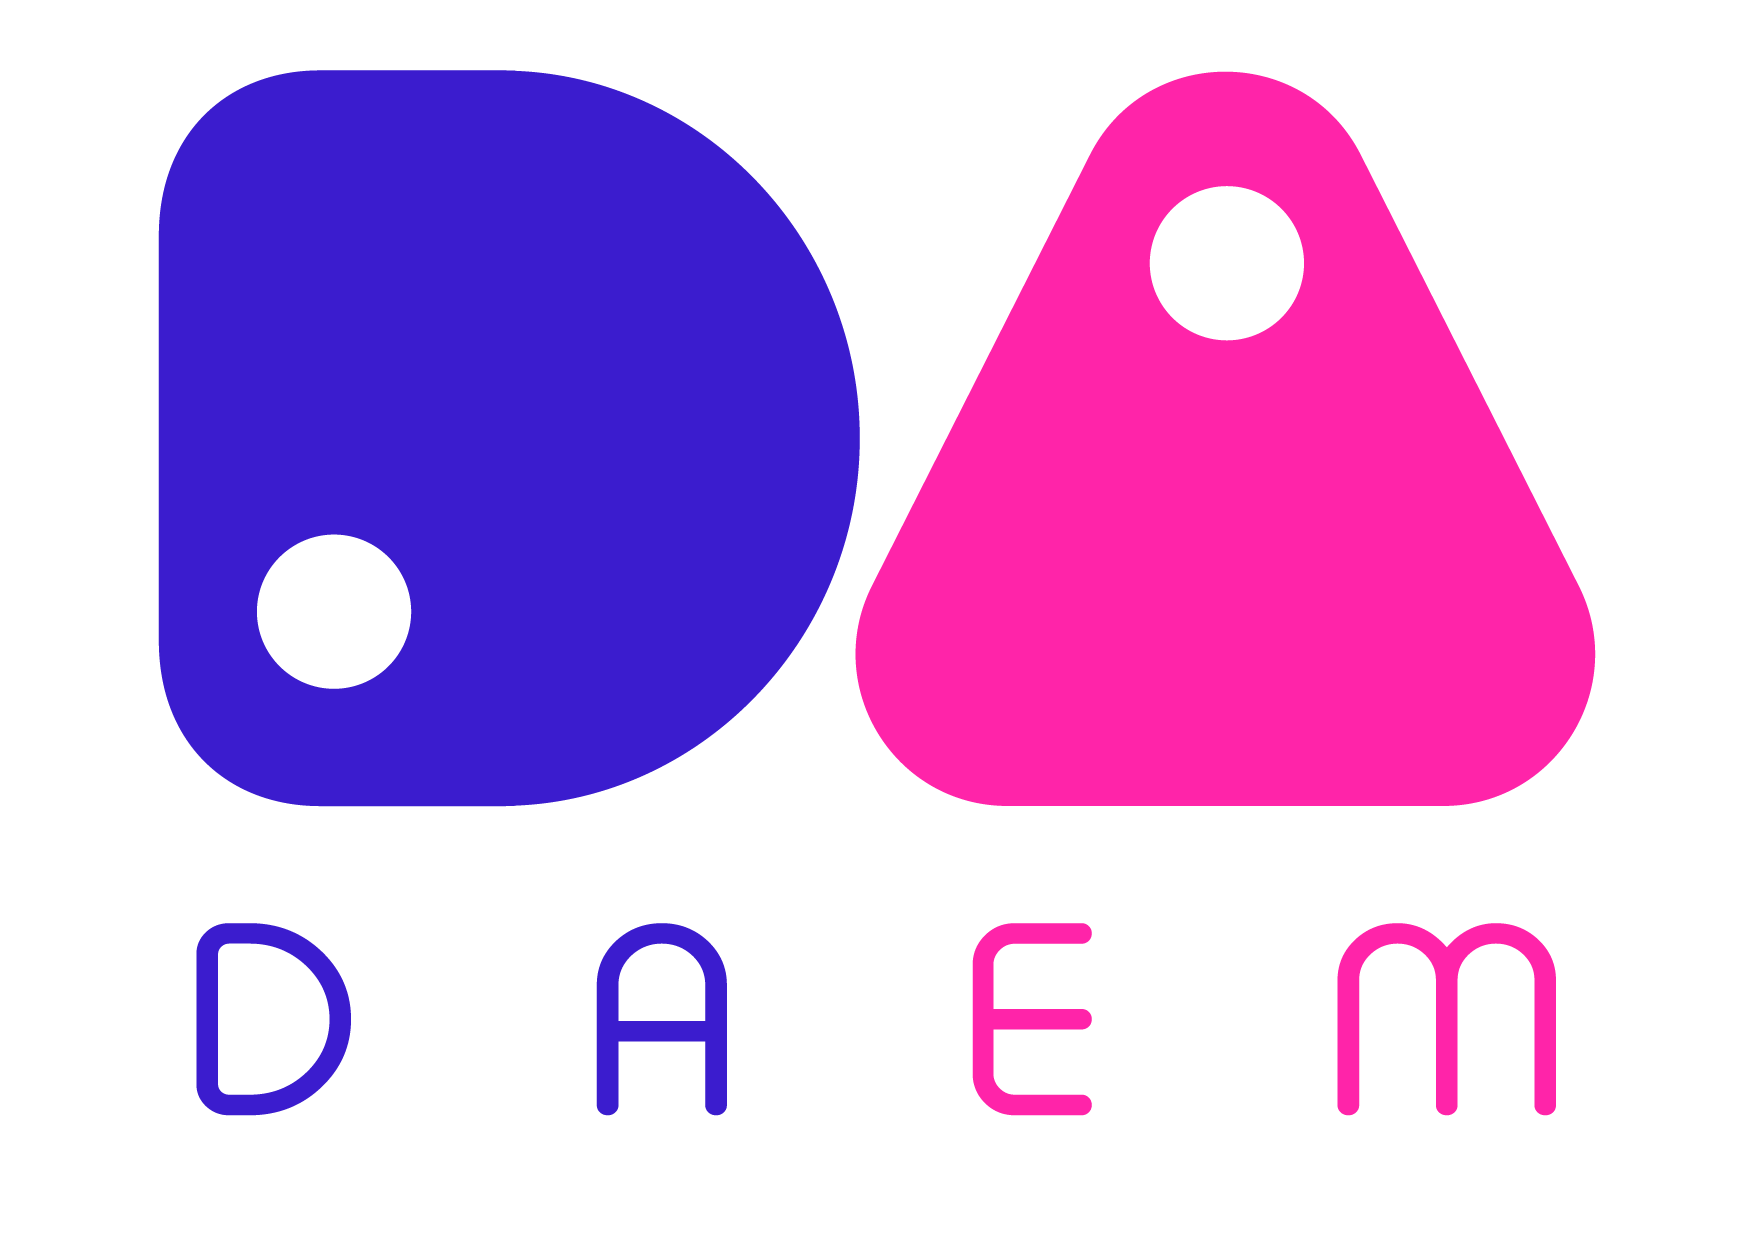 DAEM Logo